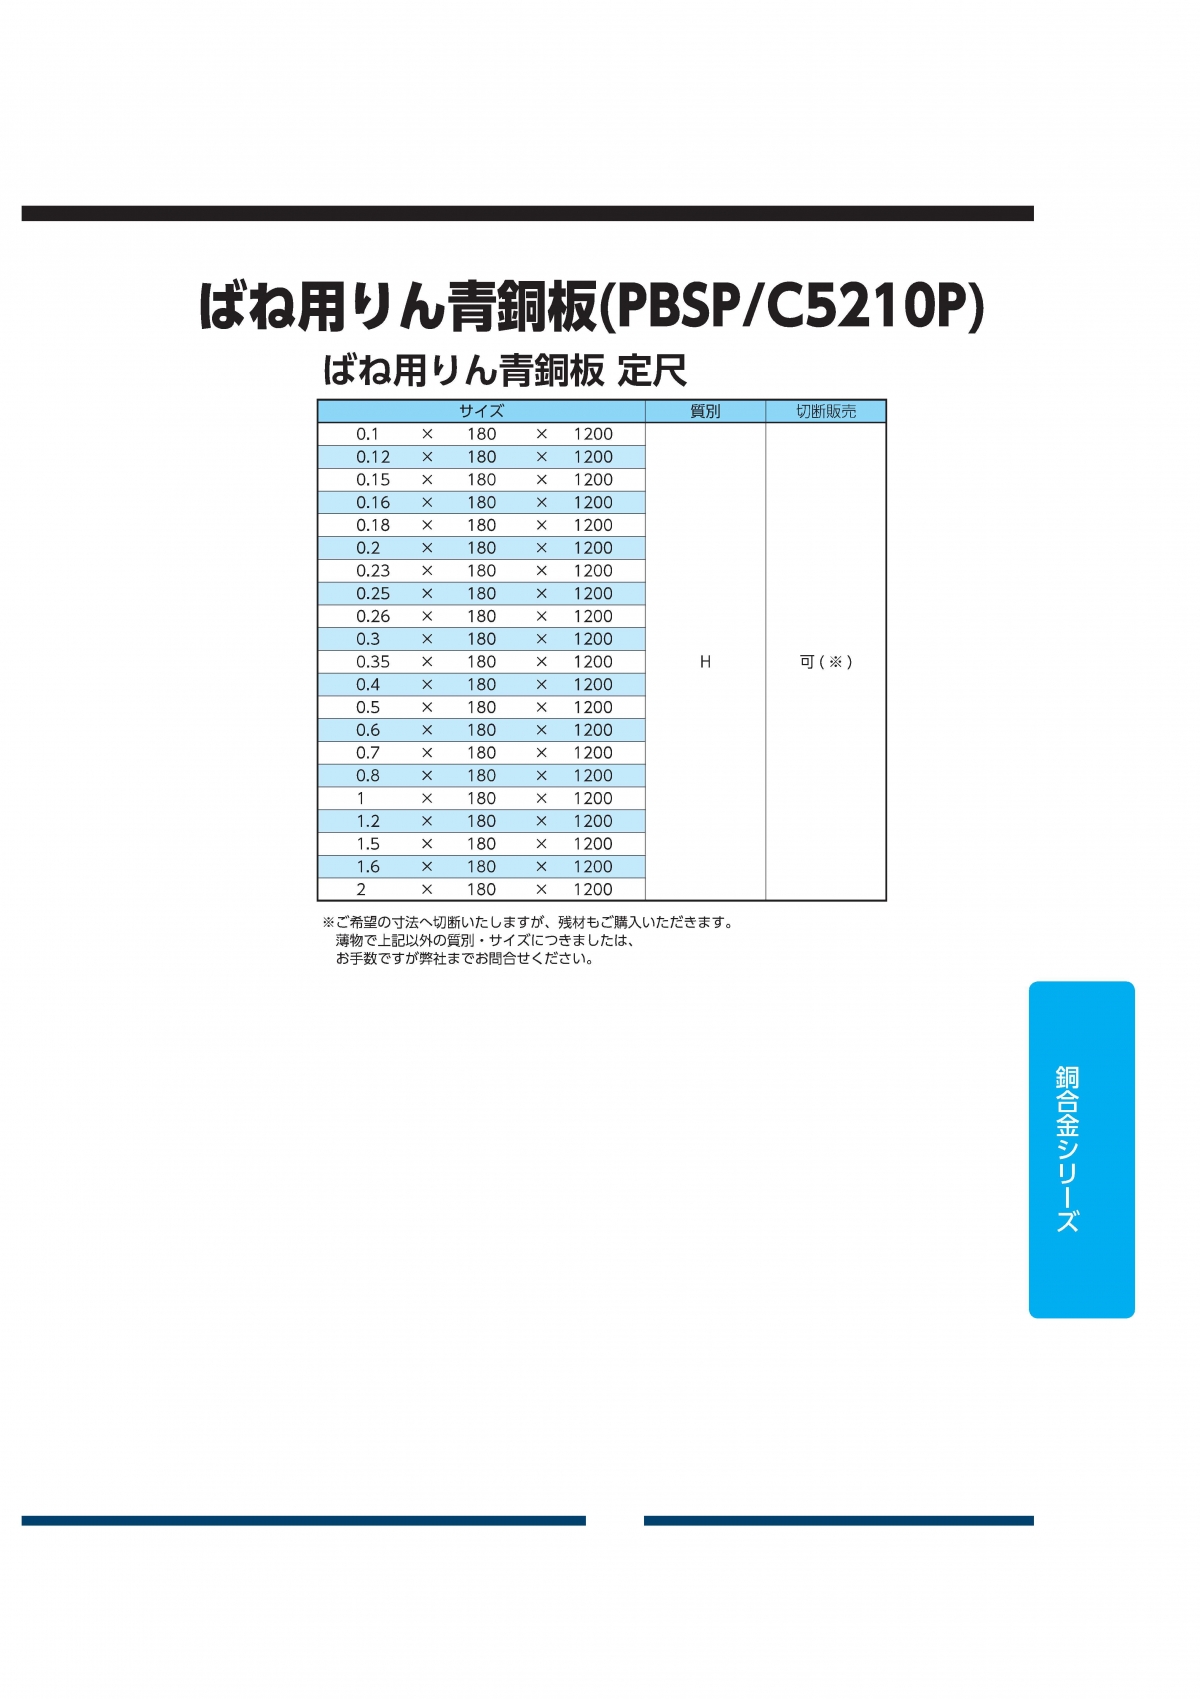 ばね用りん青銅板(C5210P)